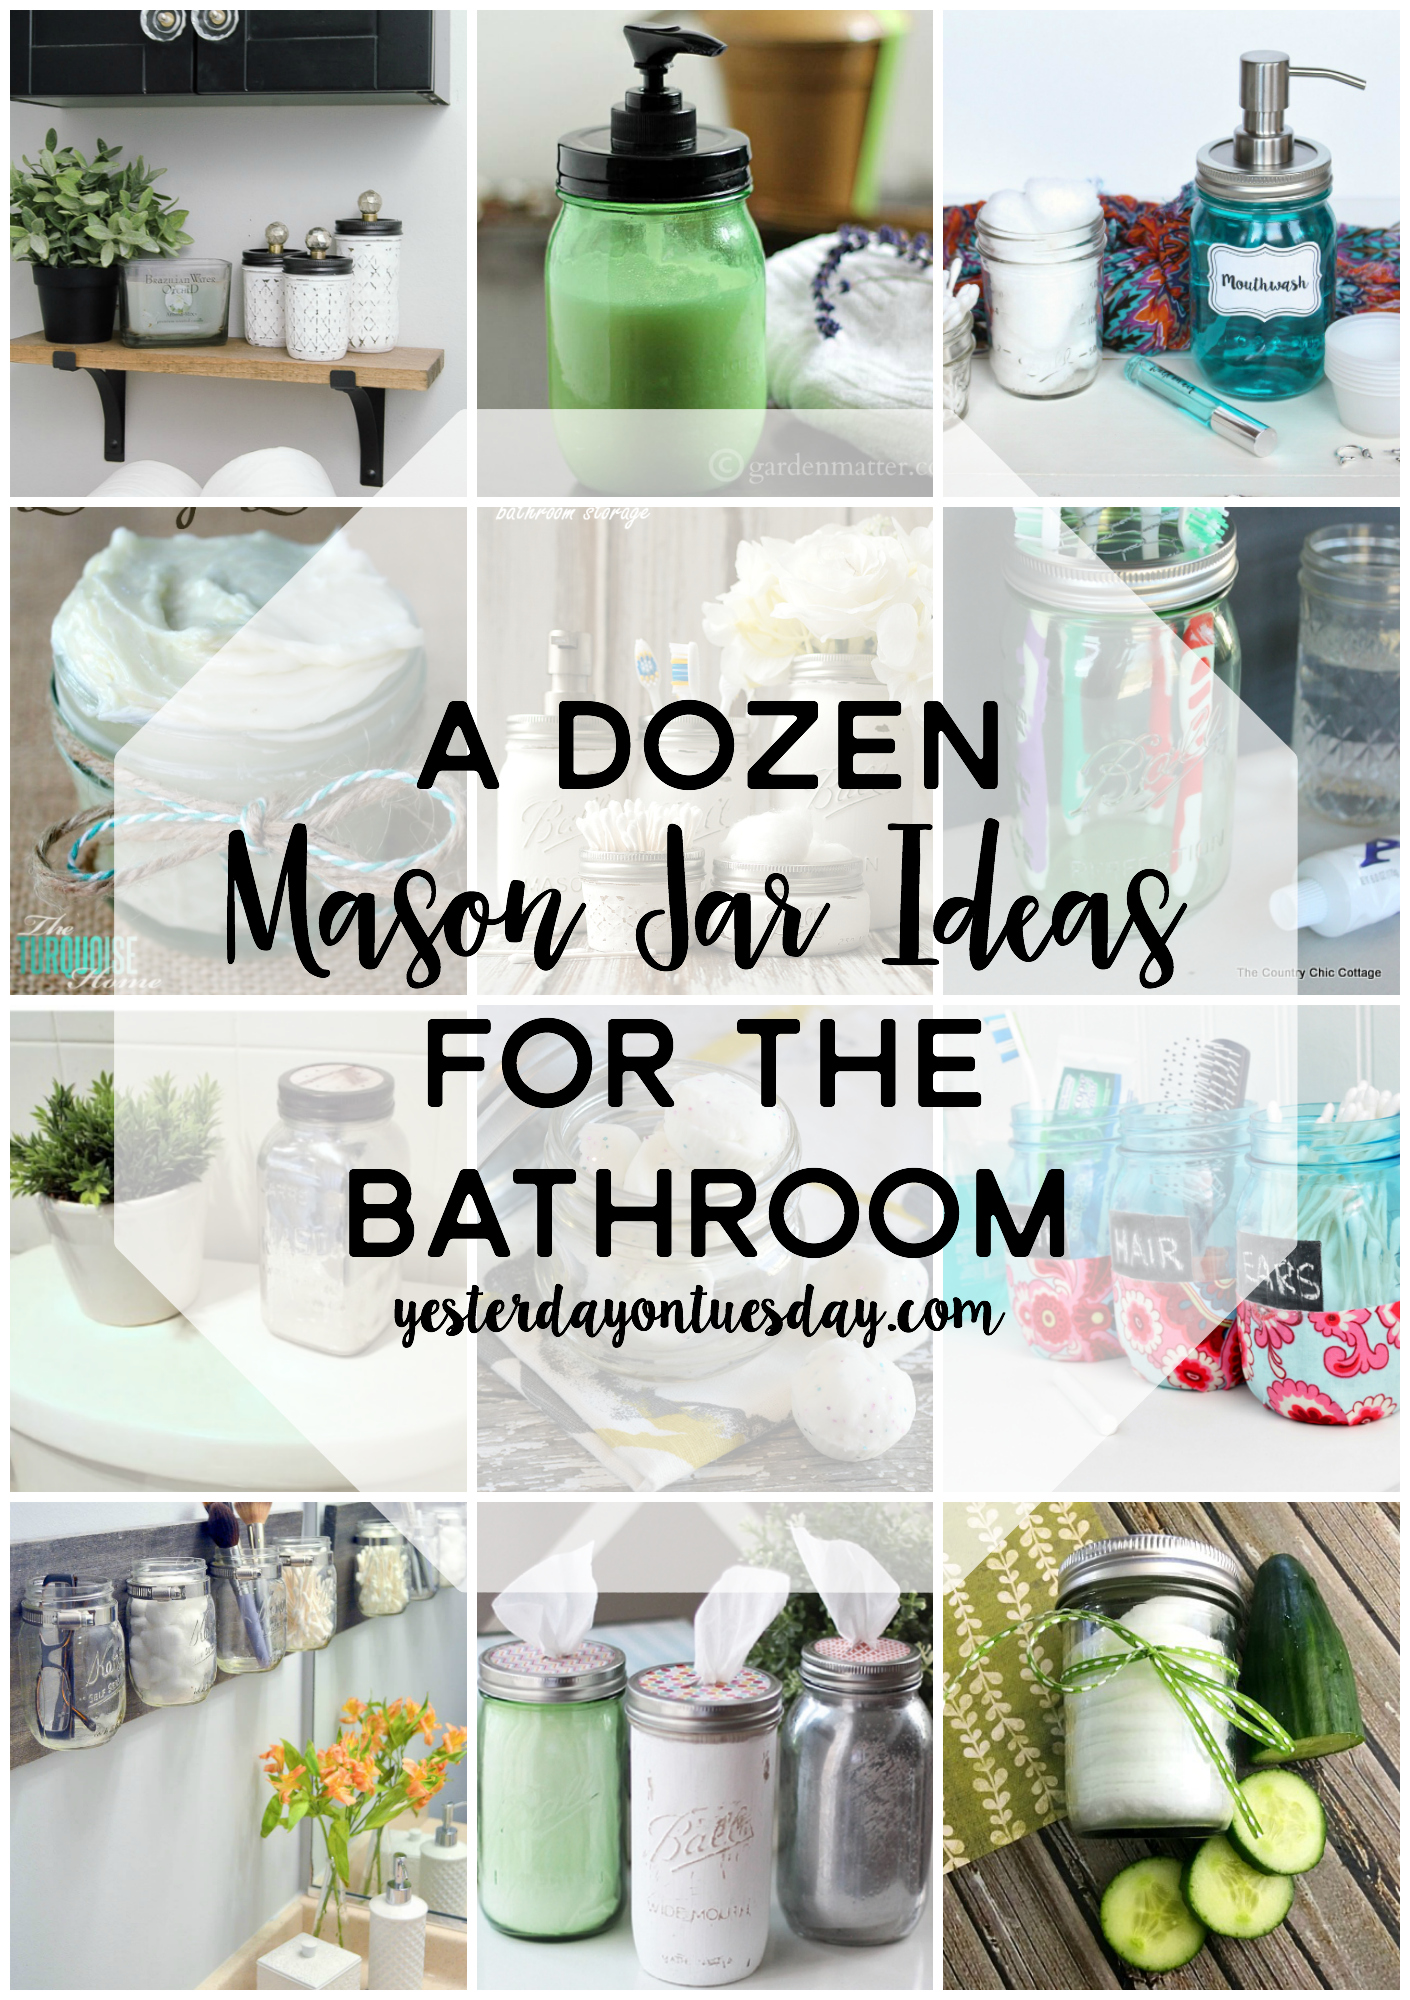 A Dozen Mason Jar Ideas for the Bathroom